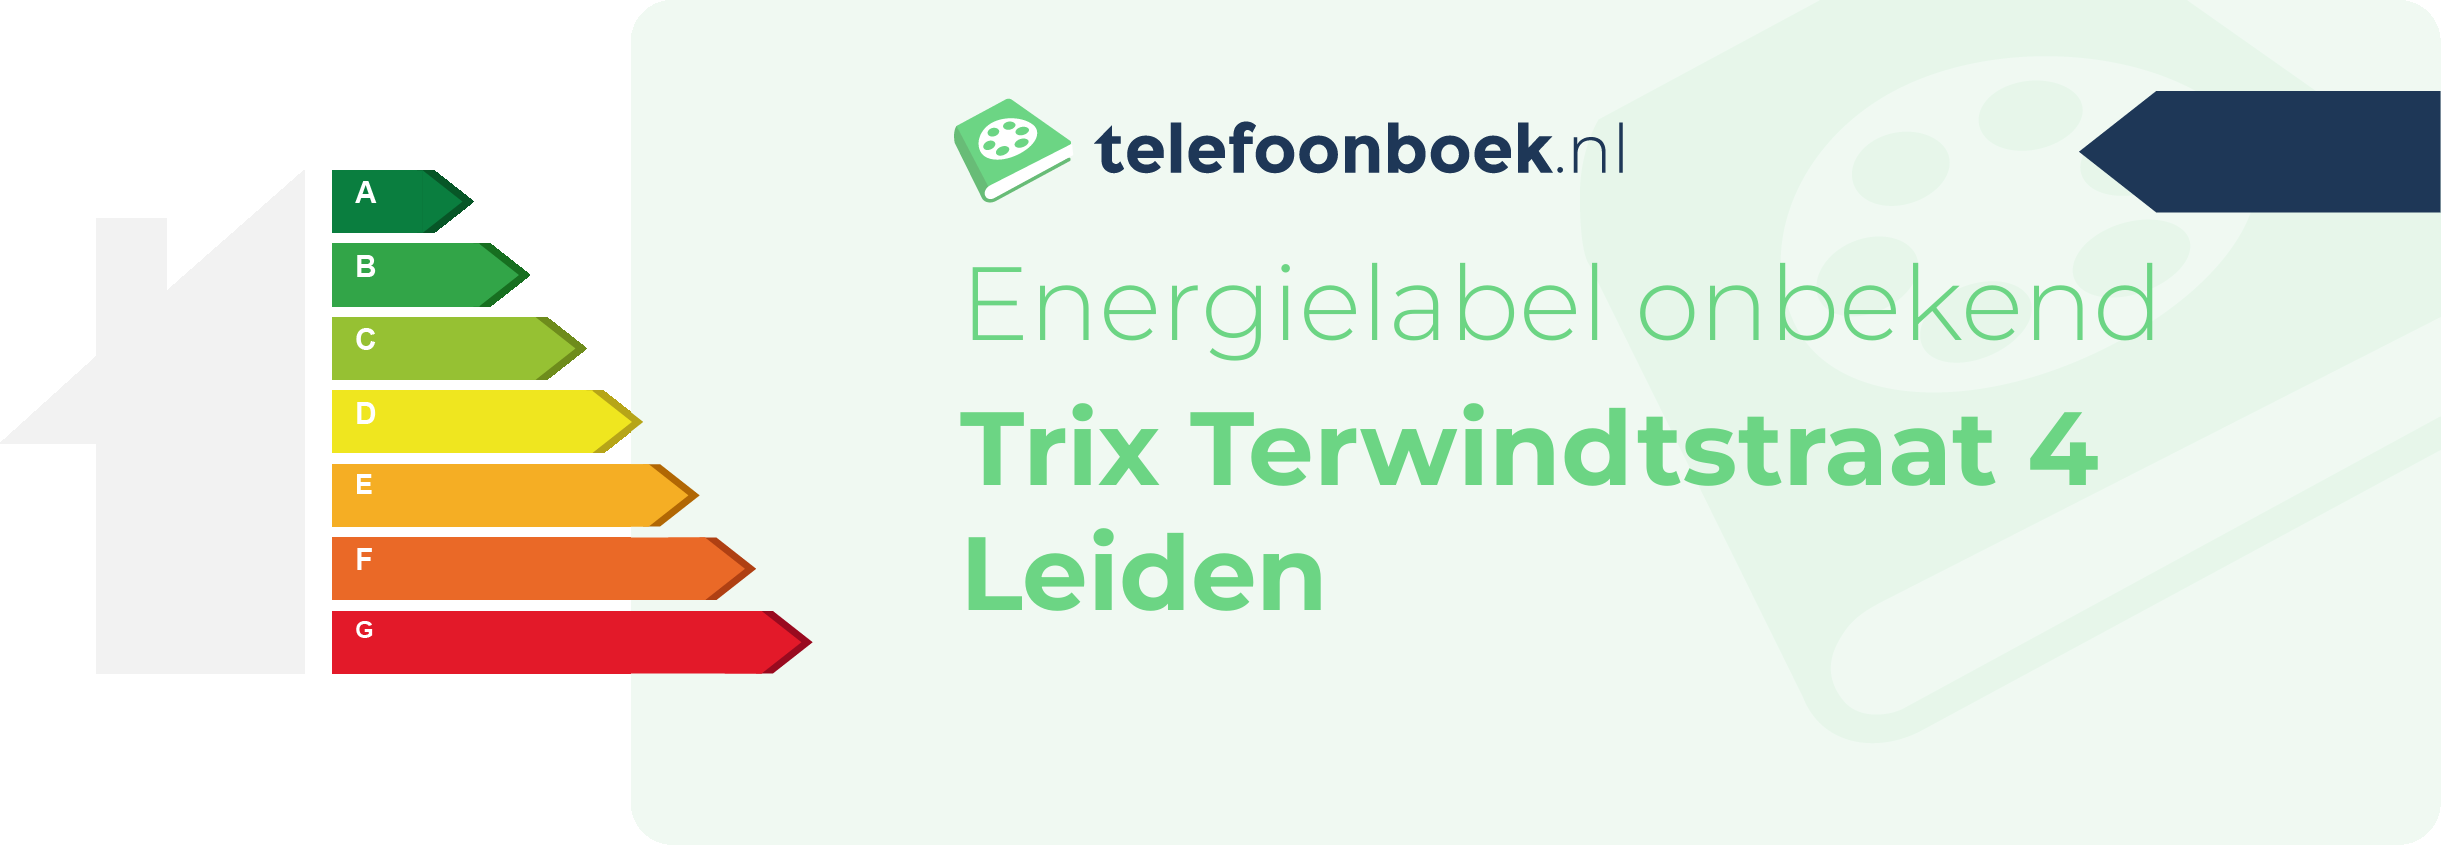 Energielabel Trix Terwindtstraat 4 Leiden